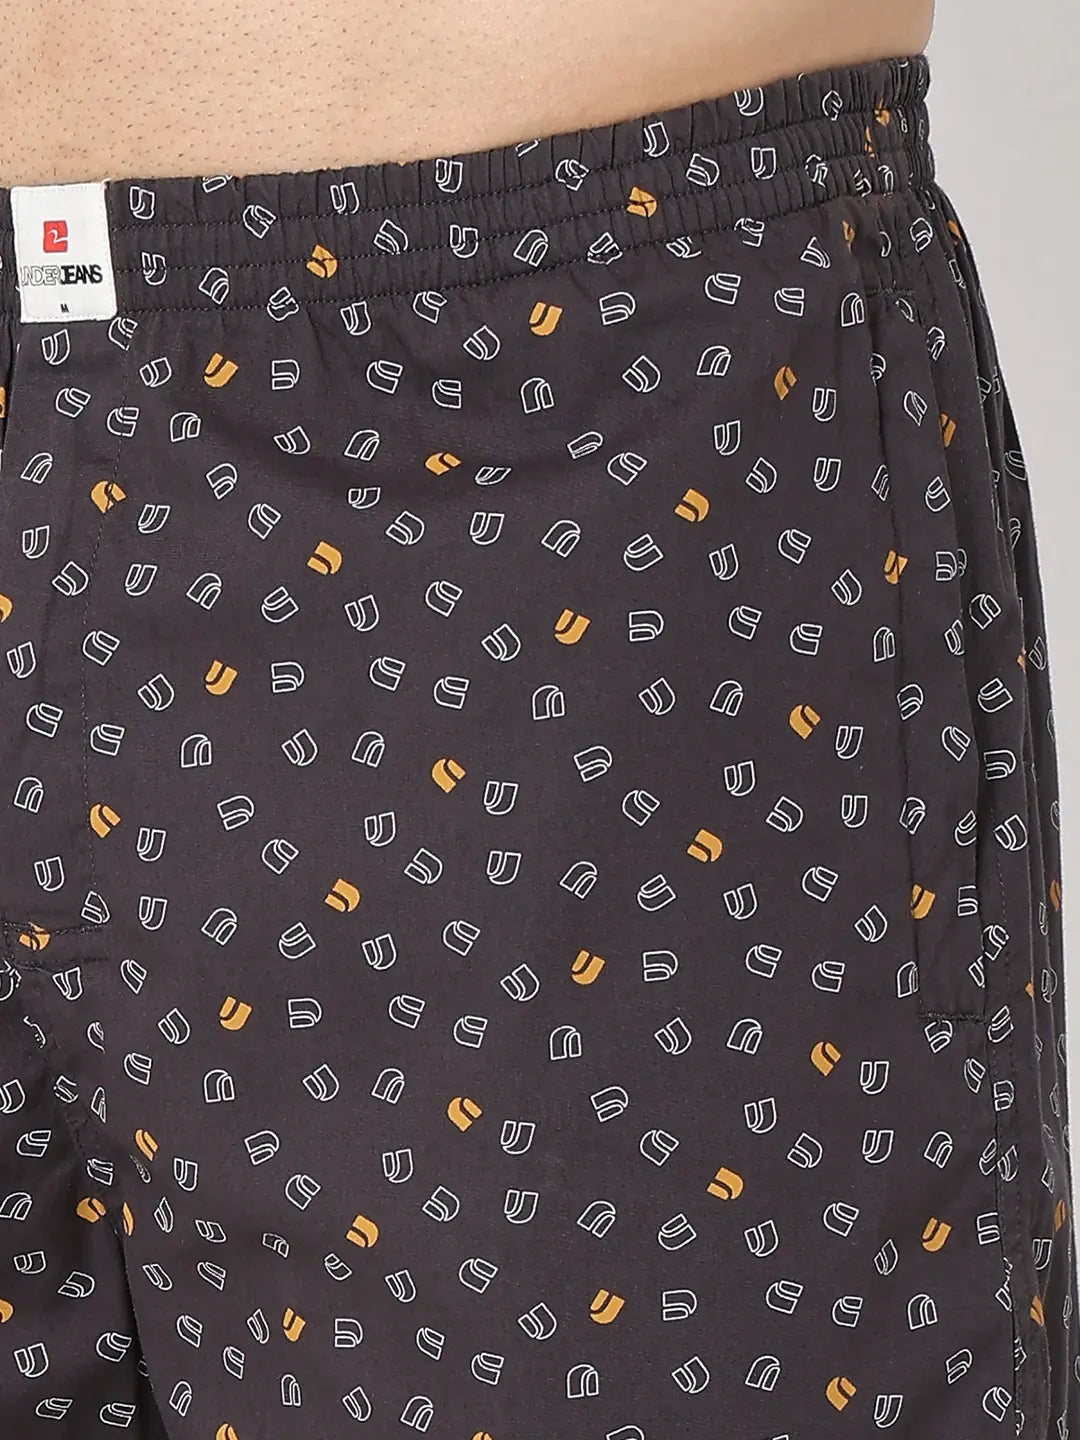 Underjeans by Spykar Men Premium Black Cotton Blend Regular Fit Boxer Shorts